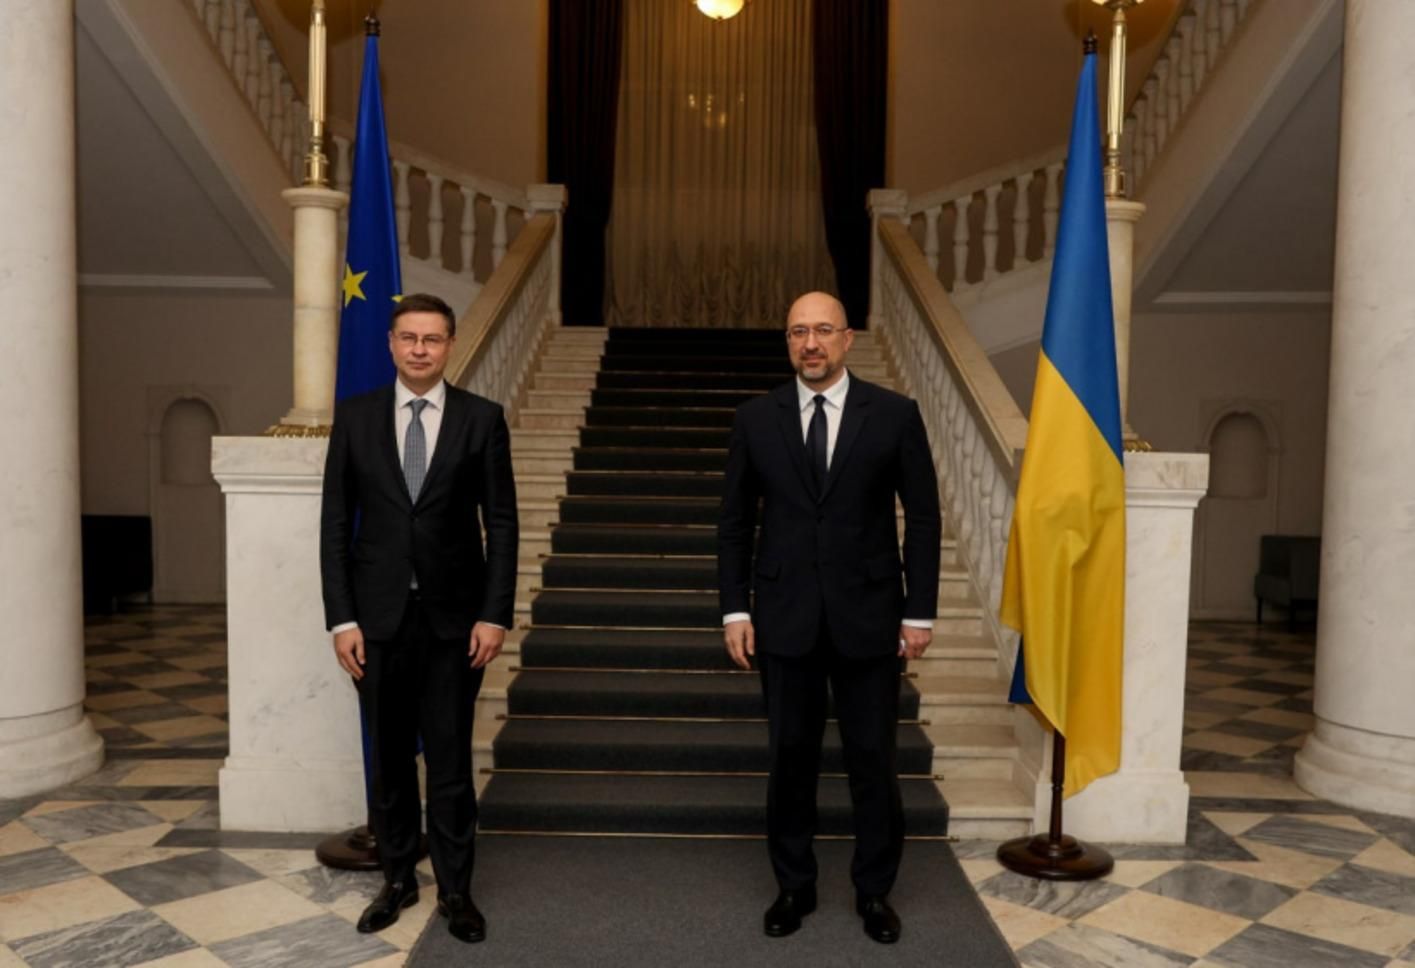 Україна скоро отримає 1,2 мільярда євро макрофінансової допомоги від Єврокомісії - Україна новини - 24 Канал